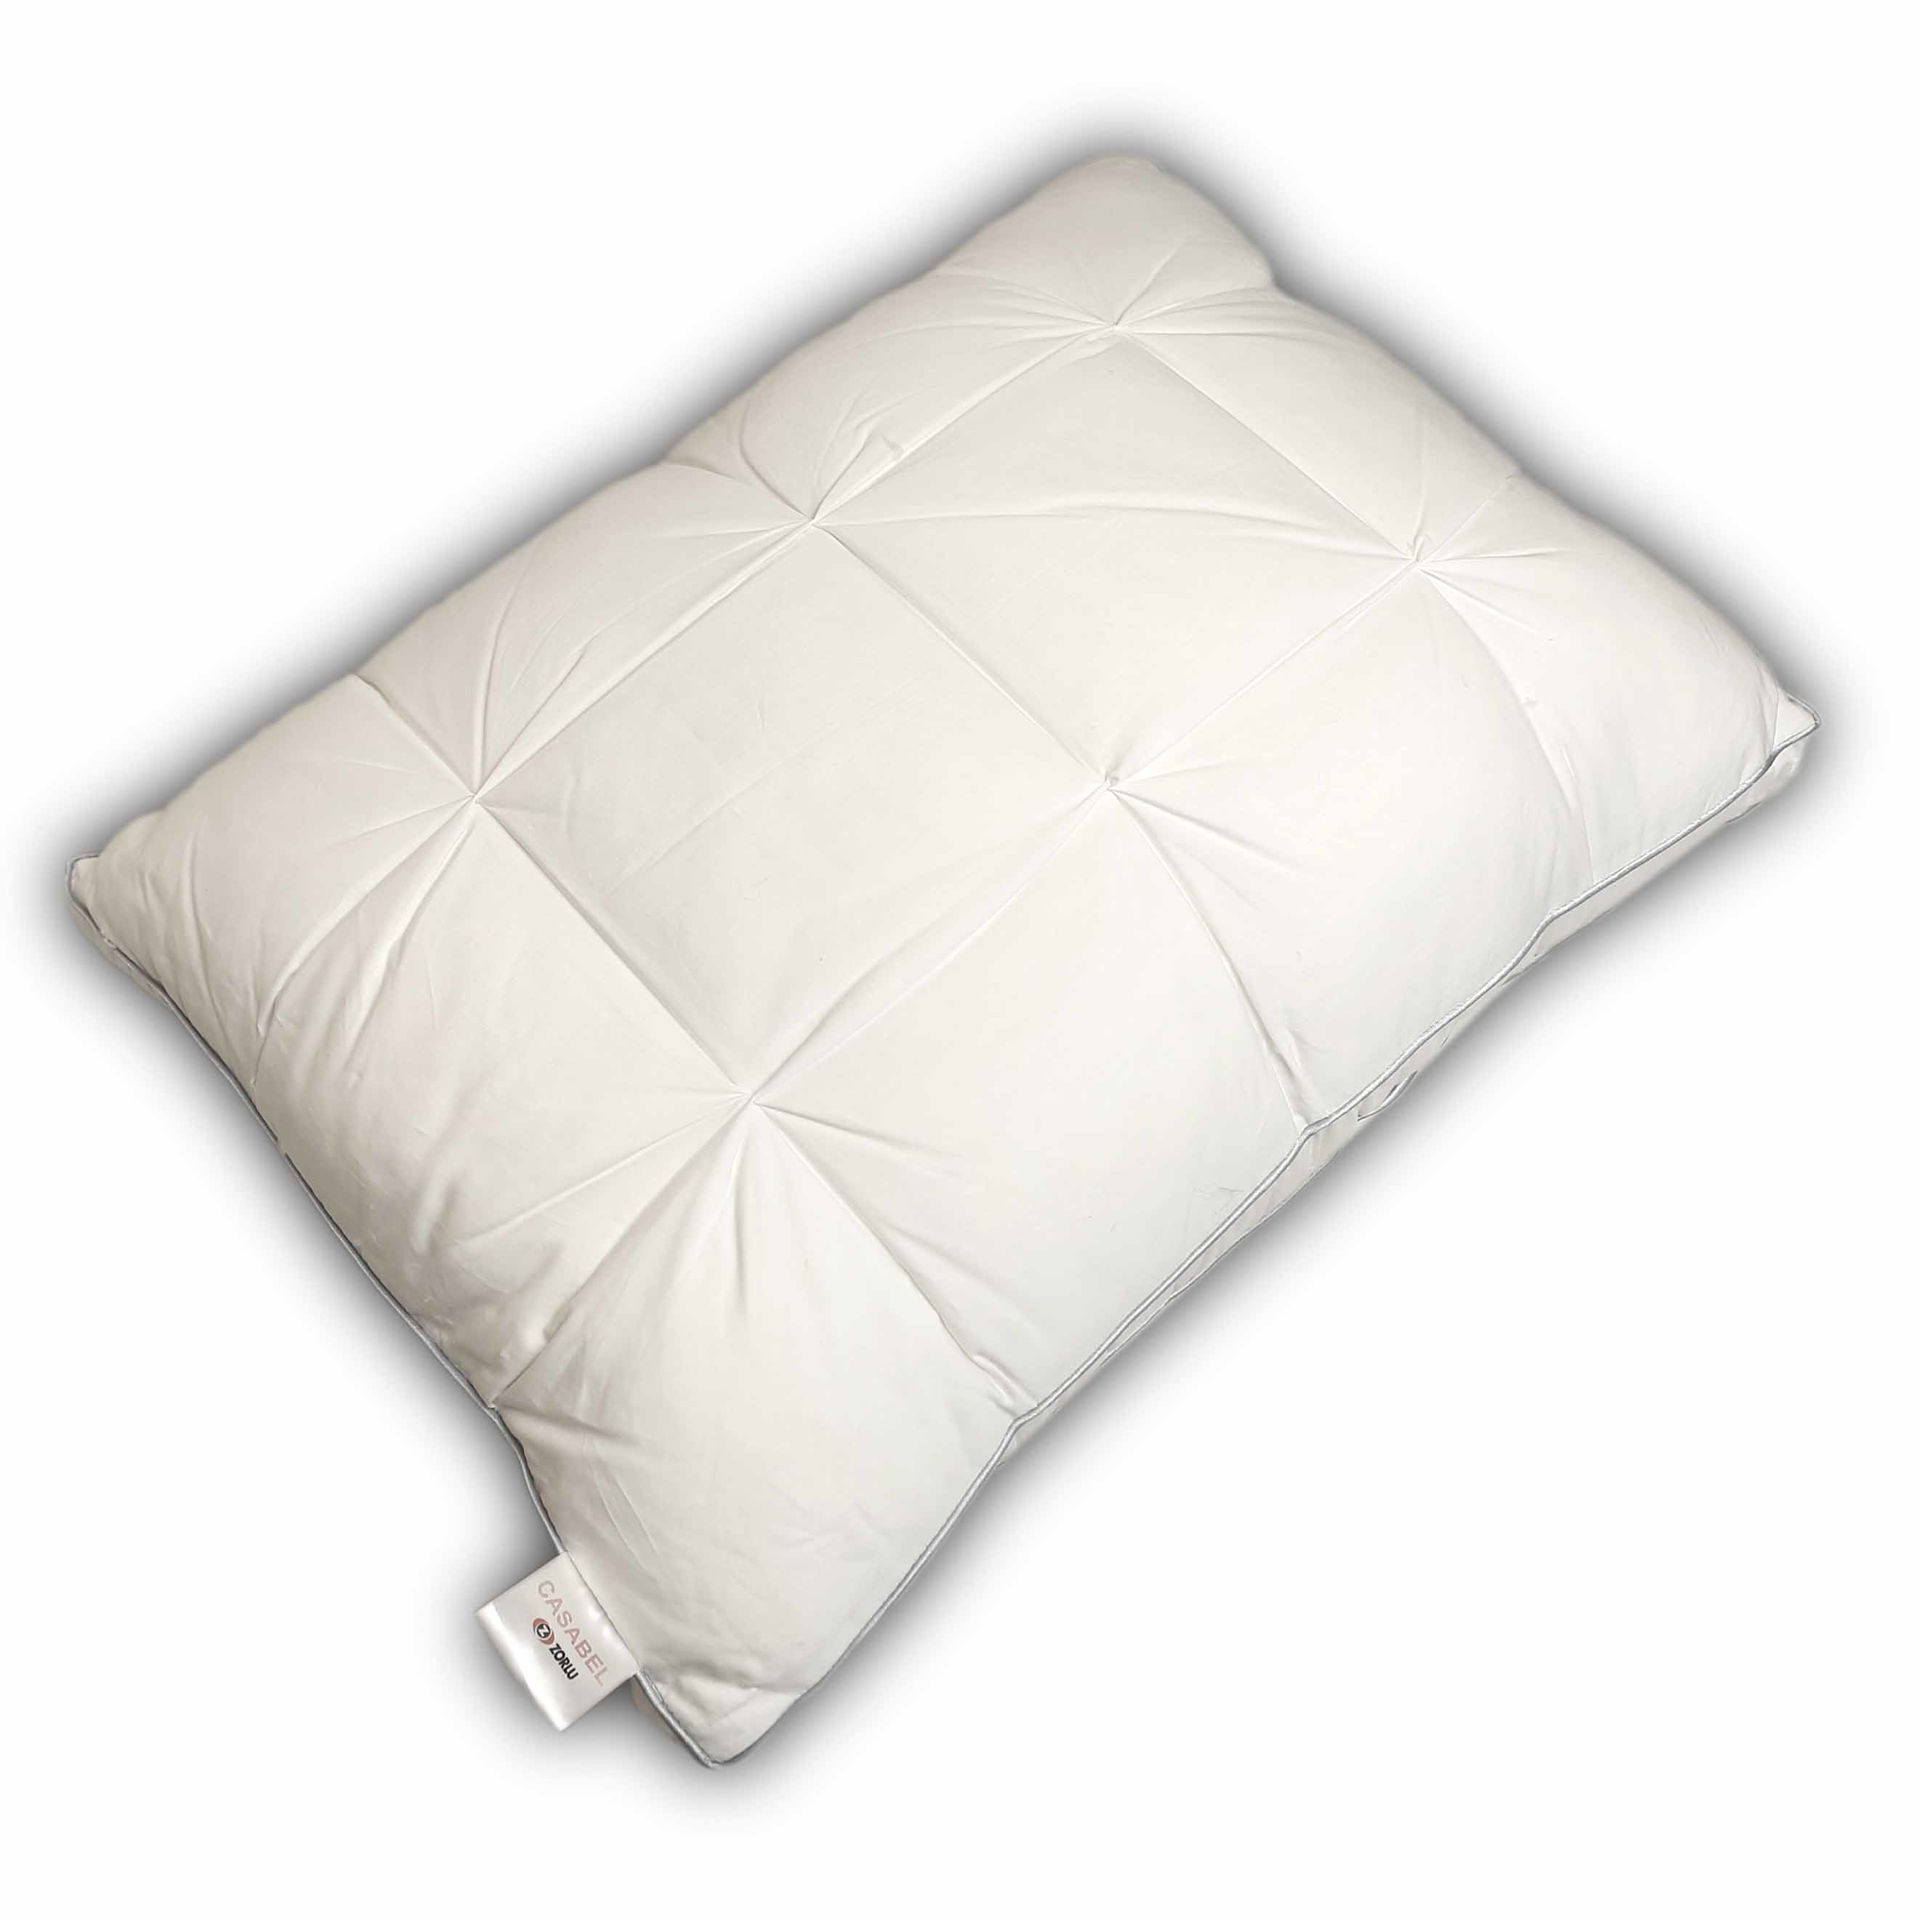 بالش مایکروژل کازابل طرح سوپر سافت Casabel Pillow Super Soft 50*70